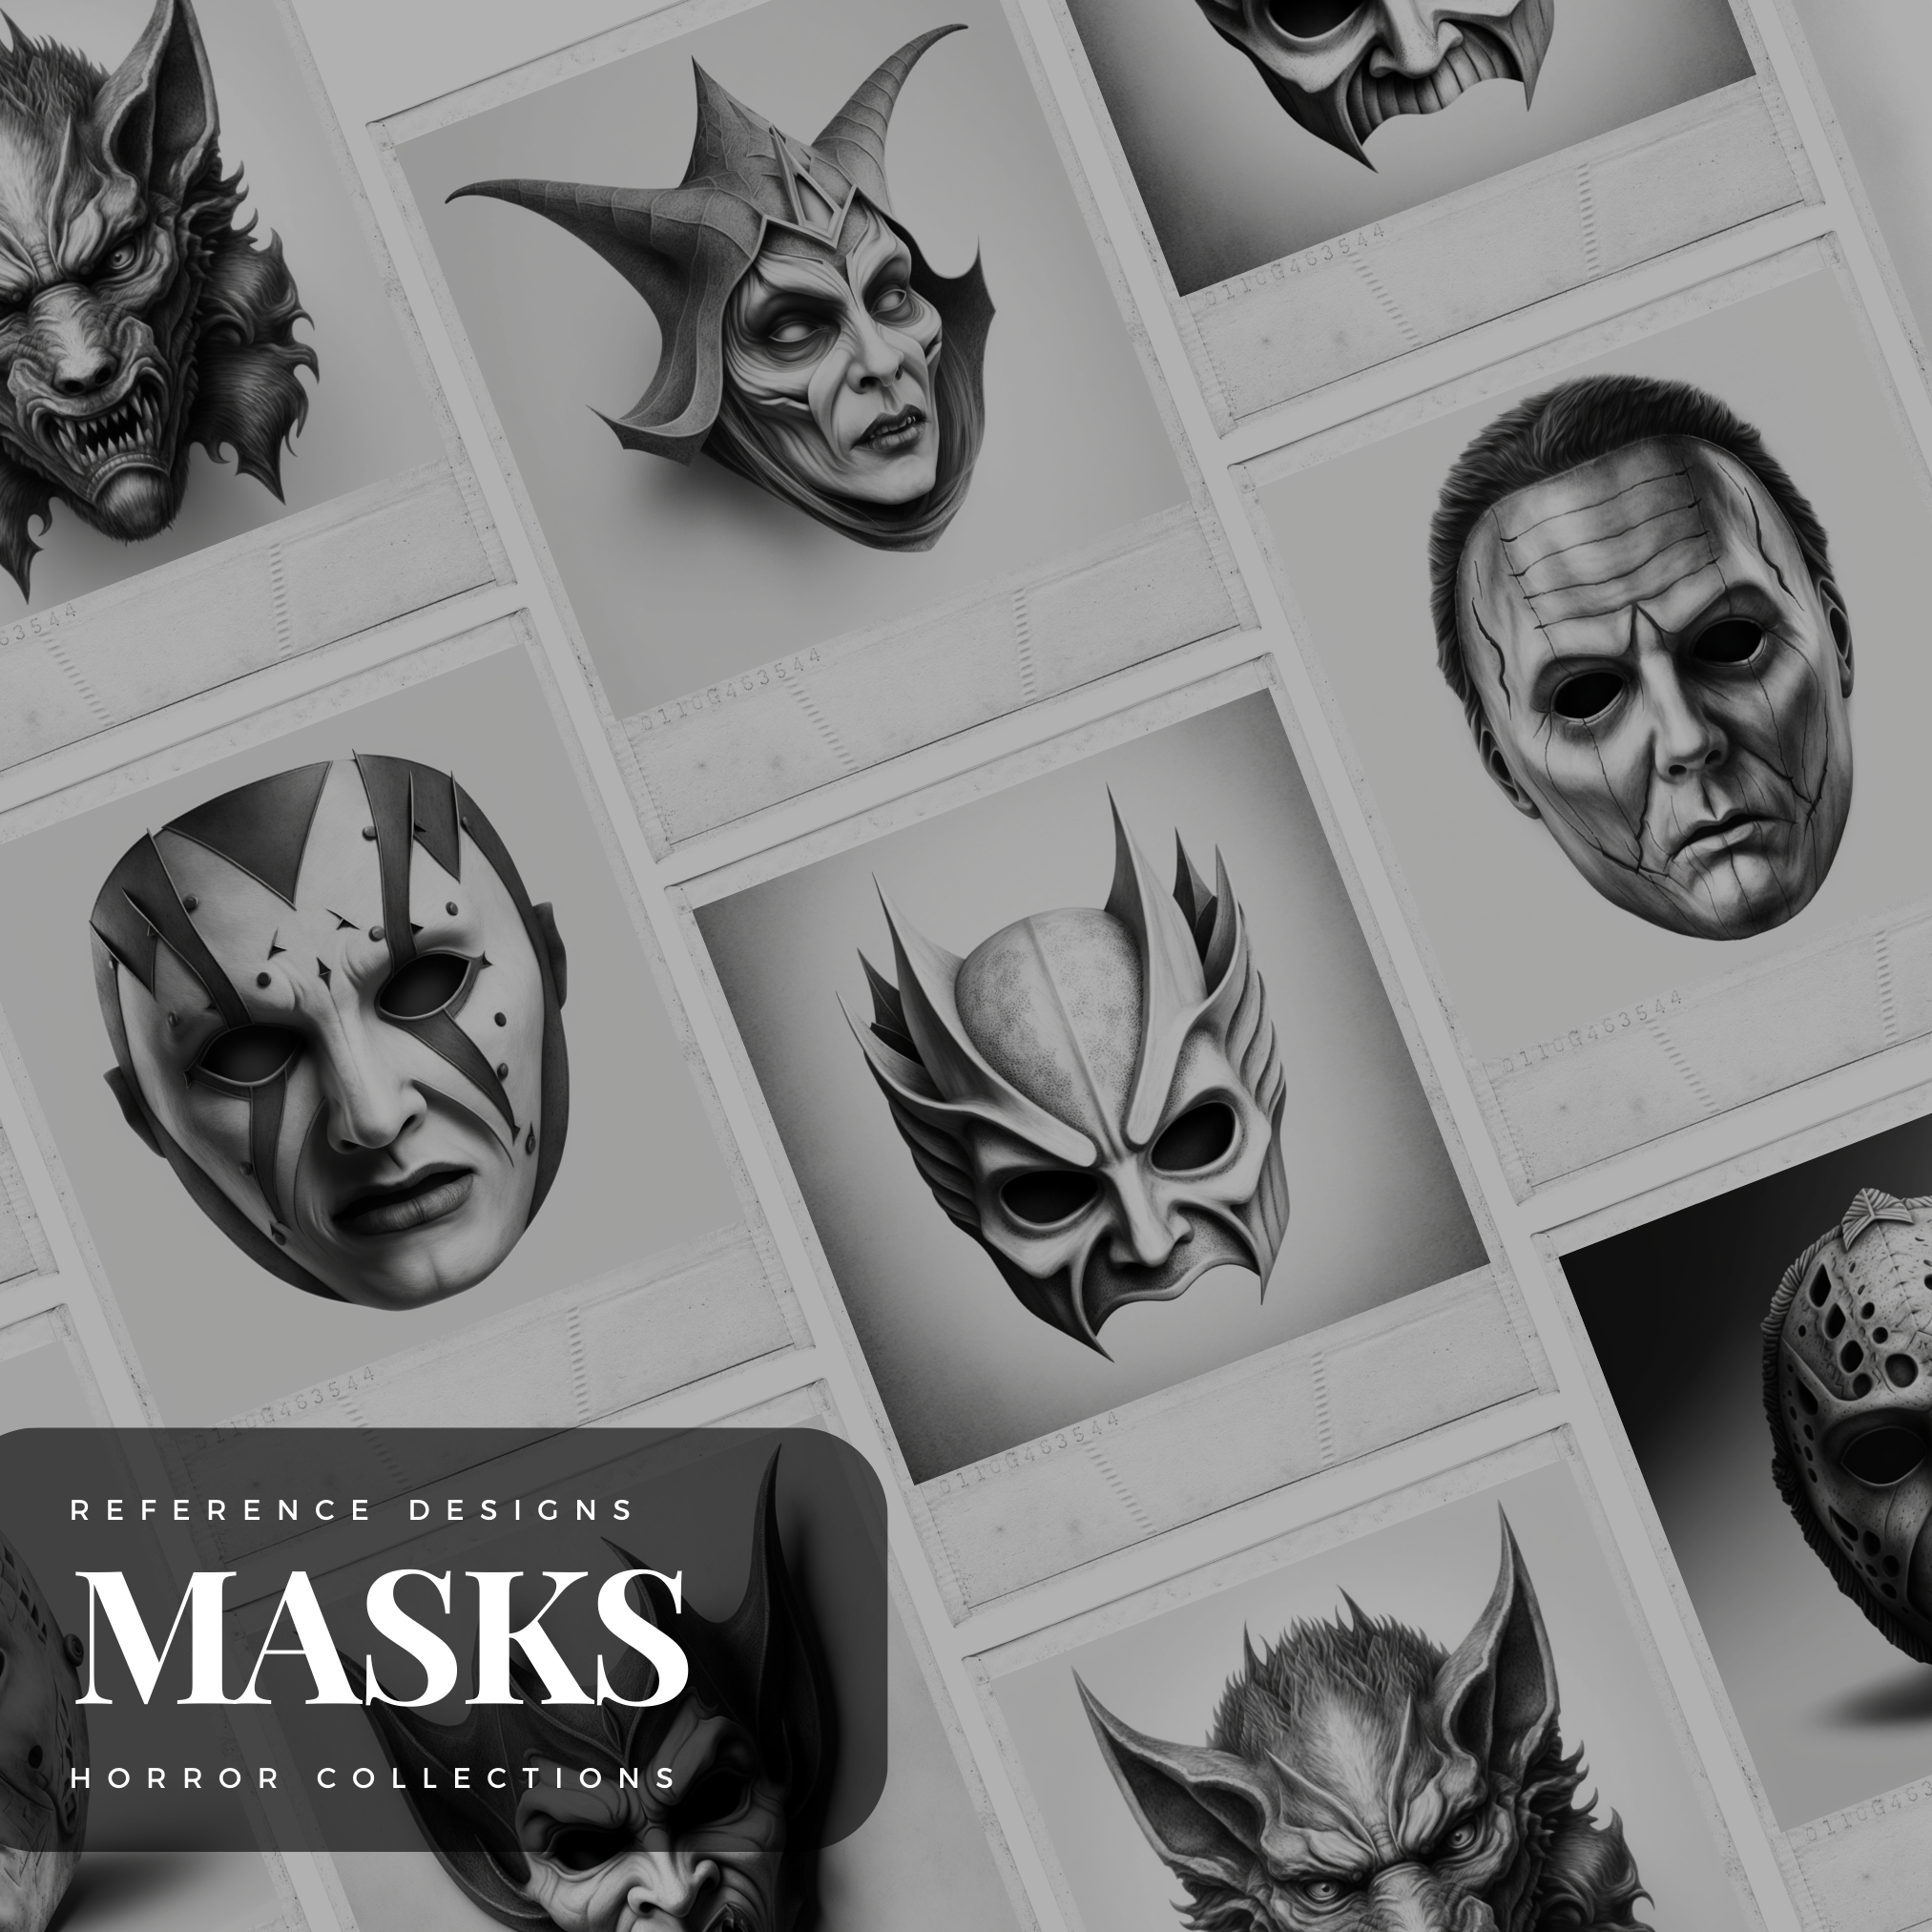 Halloween Masks Digital Reference Design Collection: 50 Procreate & Sketchbook Images